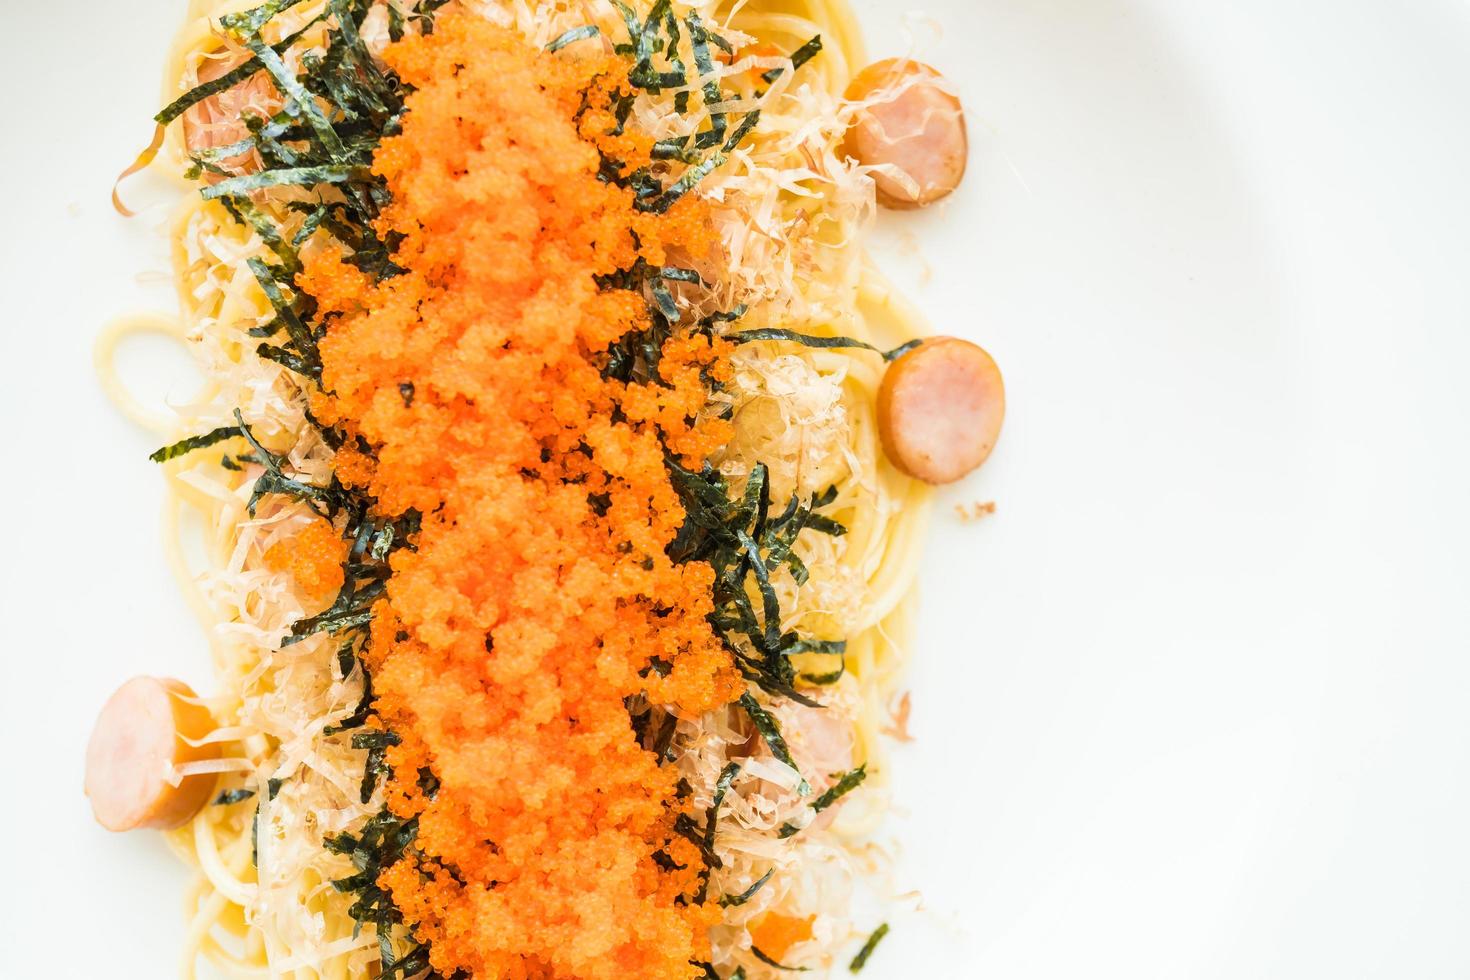 espaguete com linguiça, ovo de camarão, alga, lula seca por cima foto